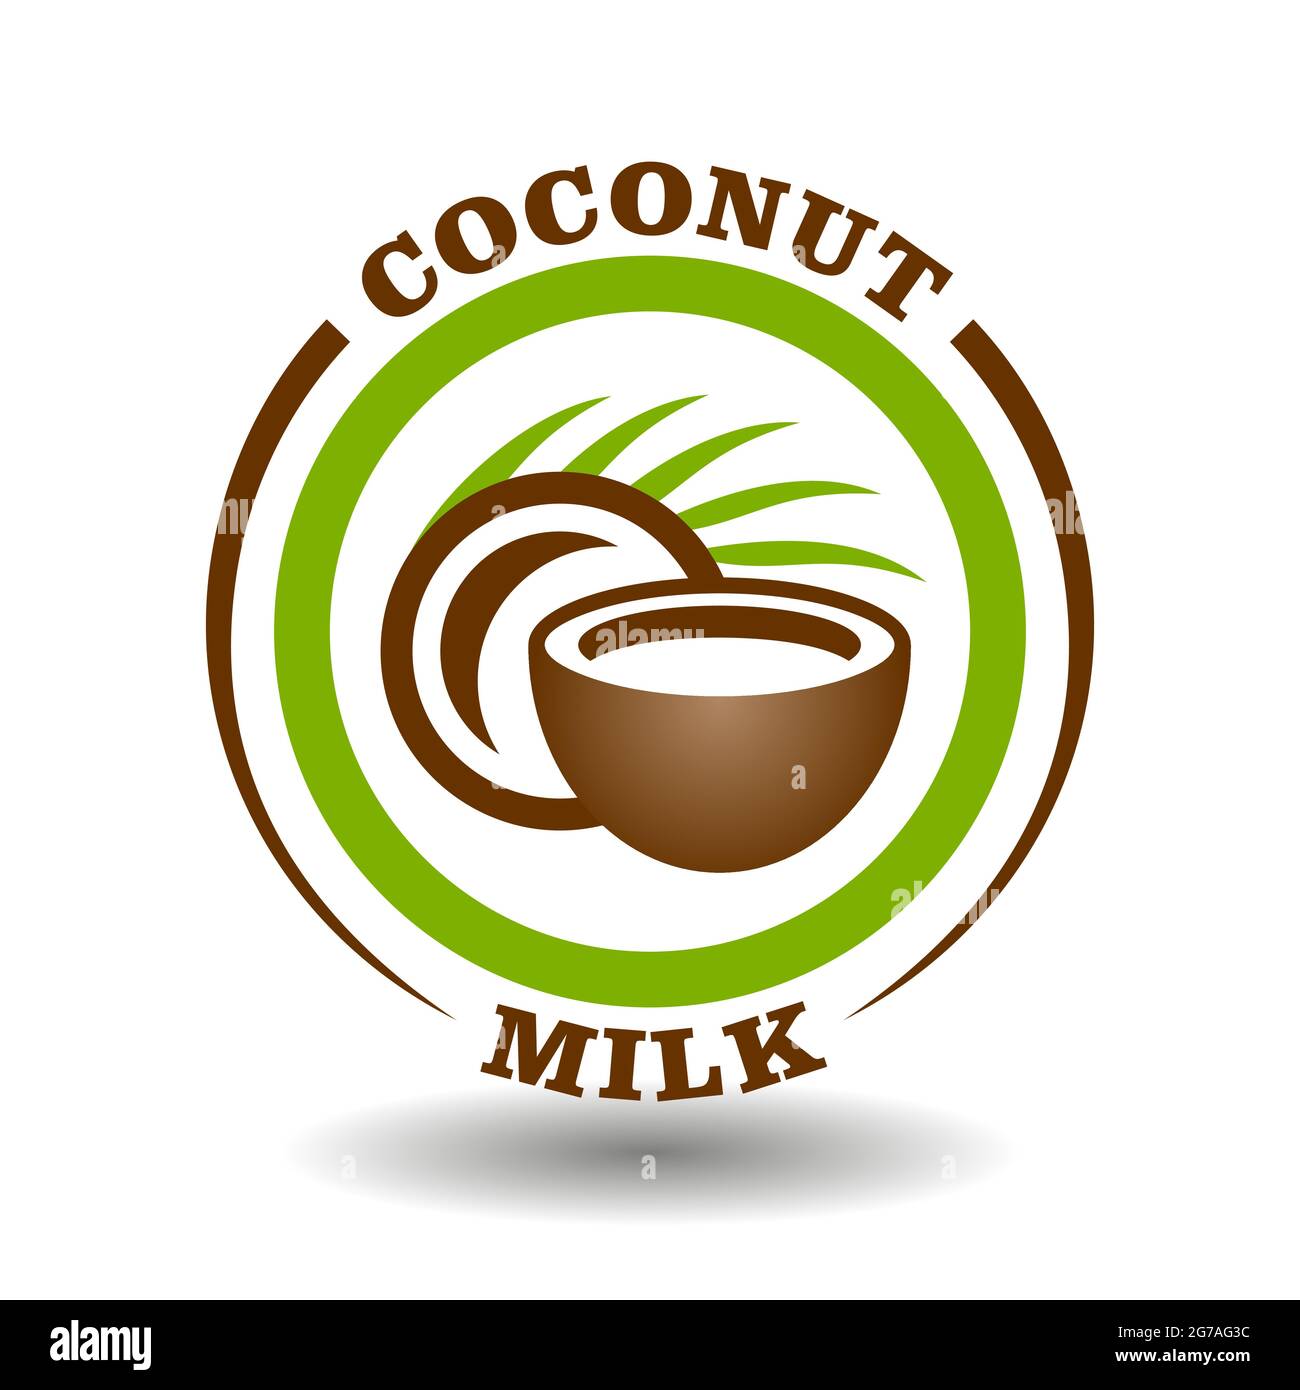 Einfaches Kreislogo Kokosmilch mit runder, halbgeschnittener Nussschale und grünem Palmblatt-Symbol zur Kennzeichnung enthält natürliches Bio-Kokosnuss-oi Stock Vektor